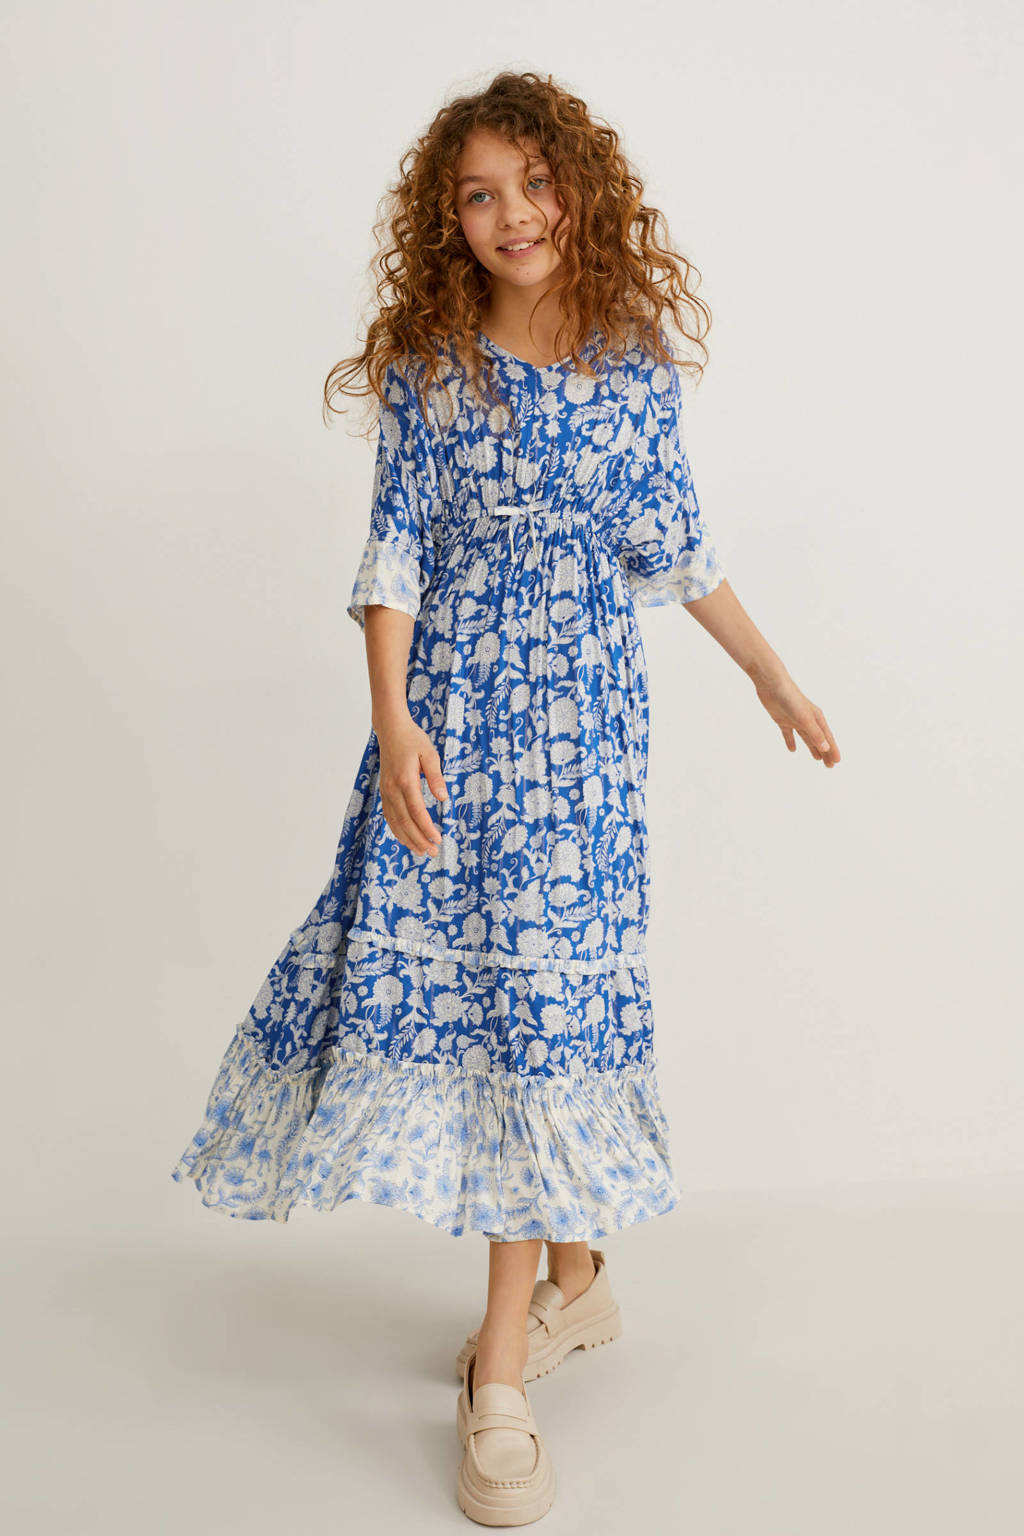 George Eliot vluchtelingen Kreet C&A A-lijn jurk met all over print blauw/wit | wehkamp